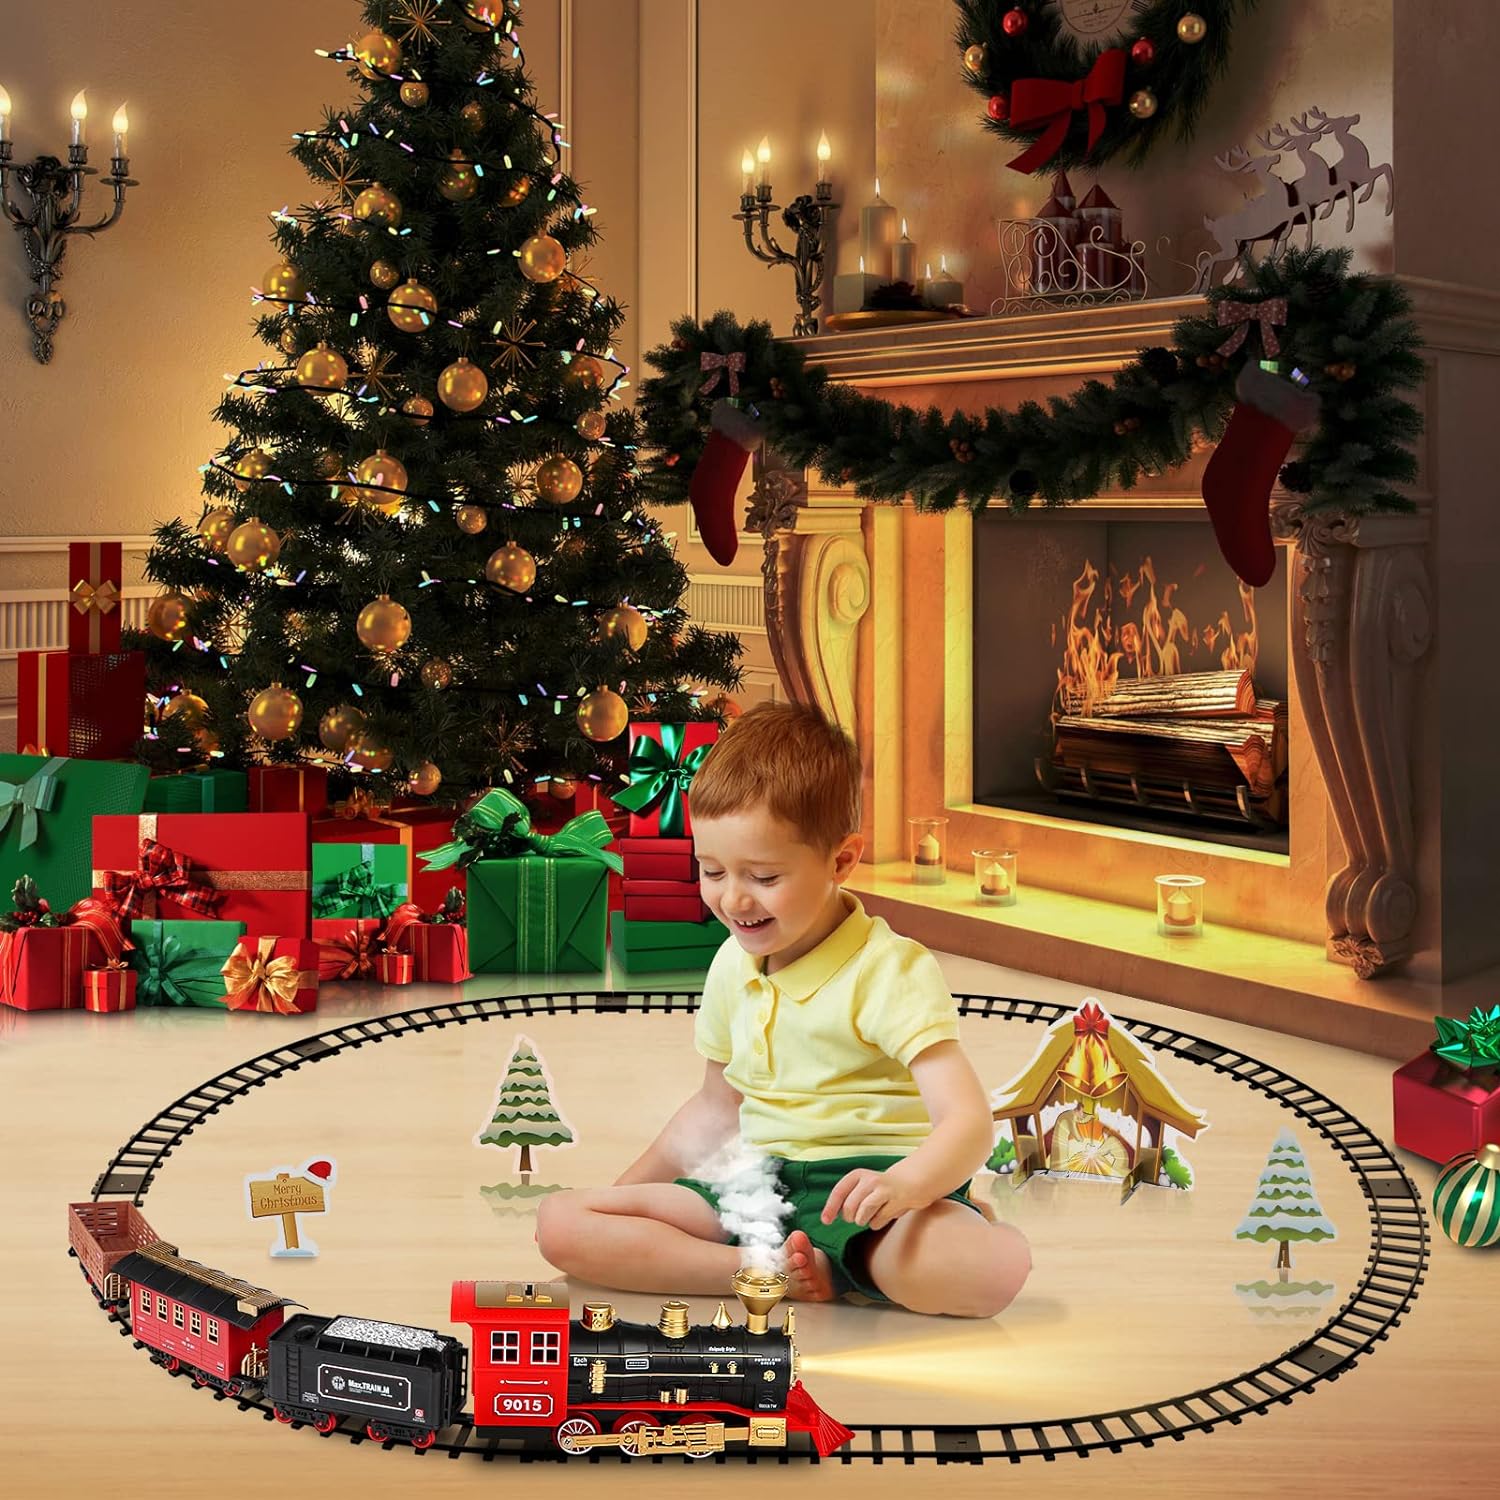 Train Toys for Boys Girls w/Smokes, Lights & Sound, Tracks, Toy Train w/Steam Locomotive Engine